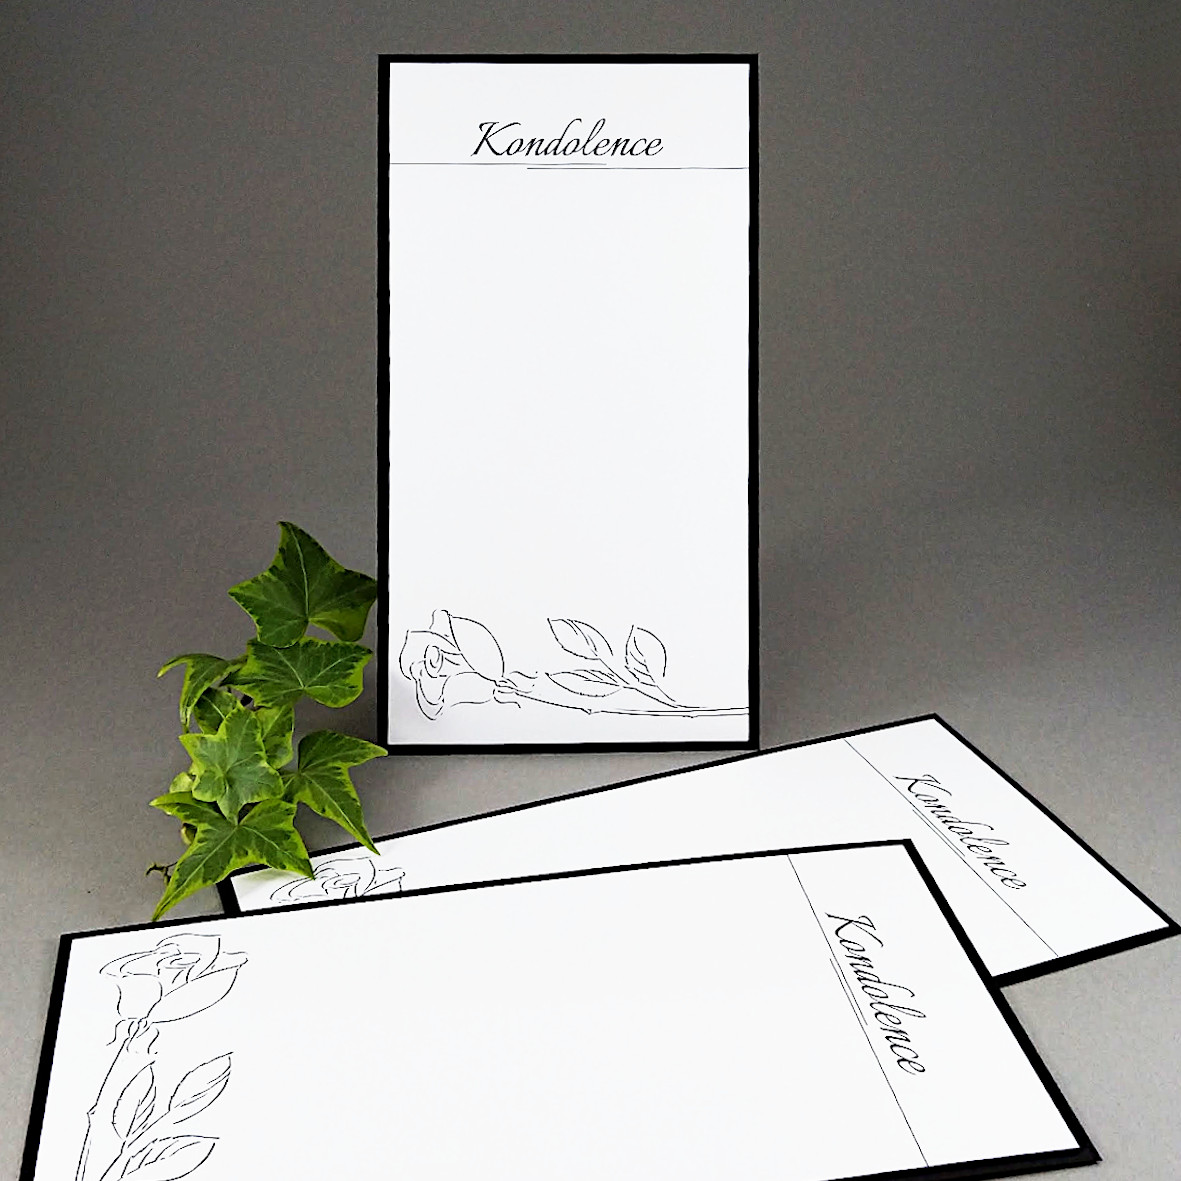 Kondolence – dvouvrstvá DL karta s motivem jednoduché kresby růže.